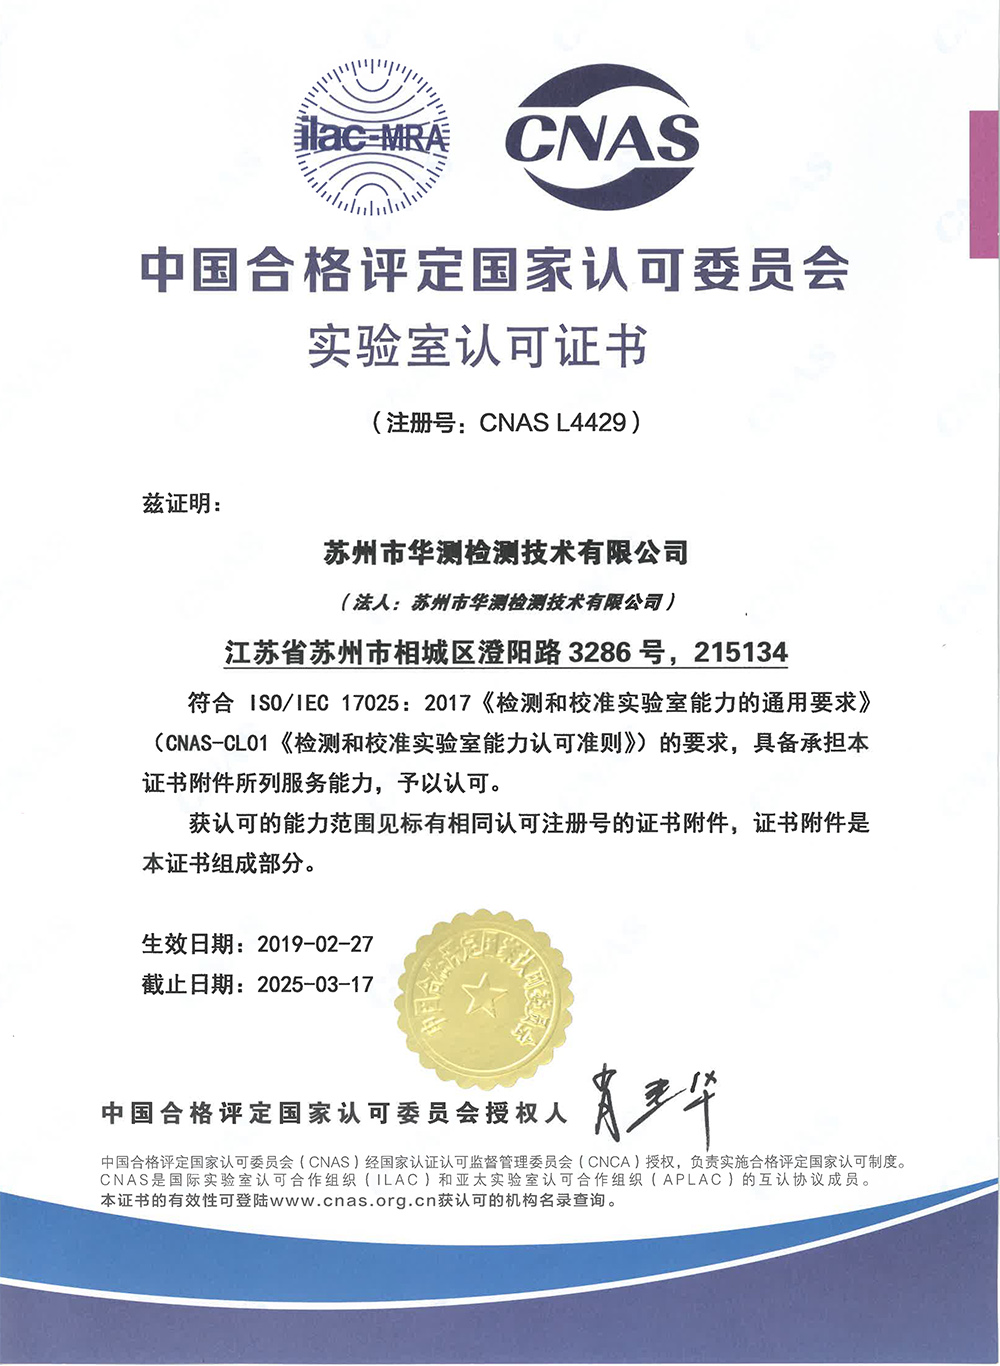 Suzhou CNAS Certificate